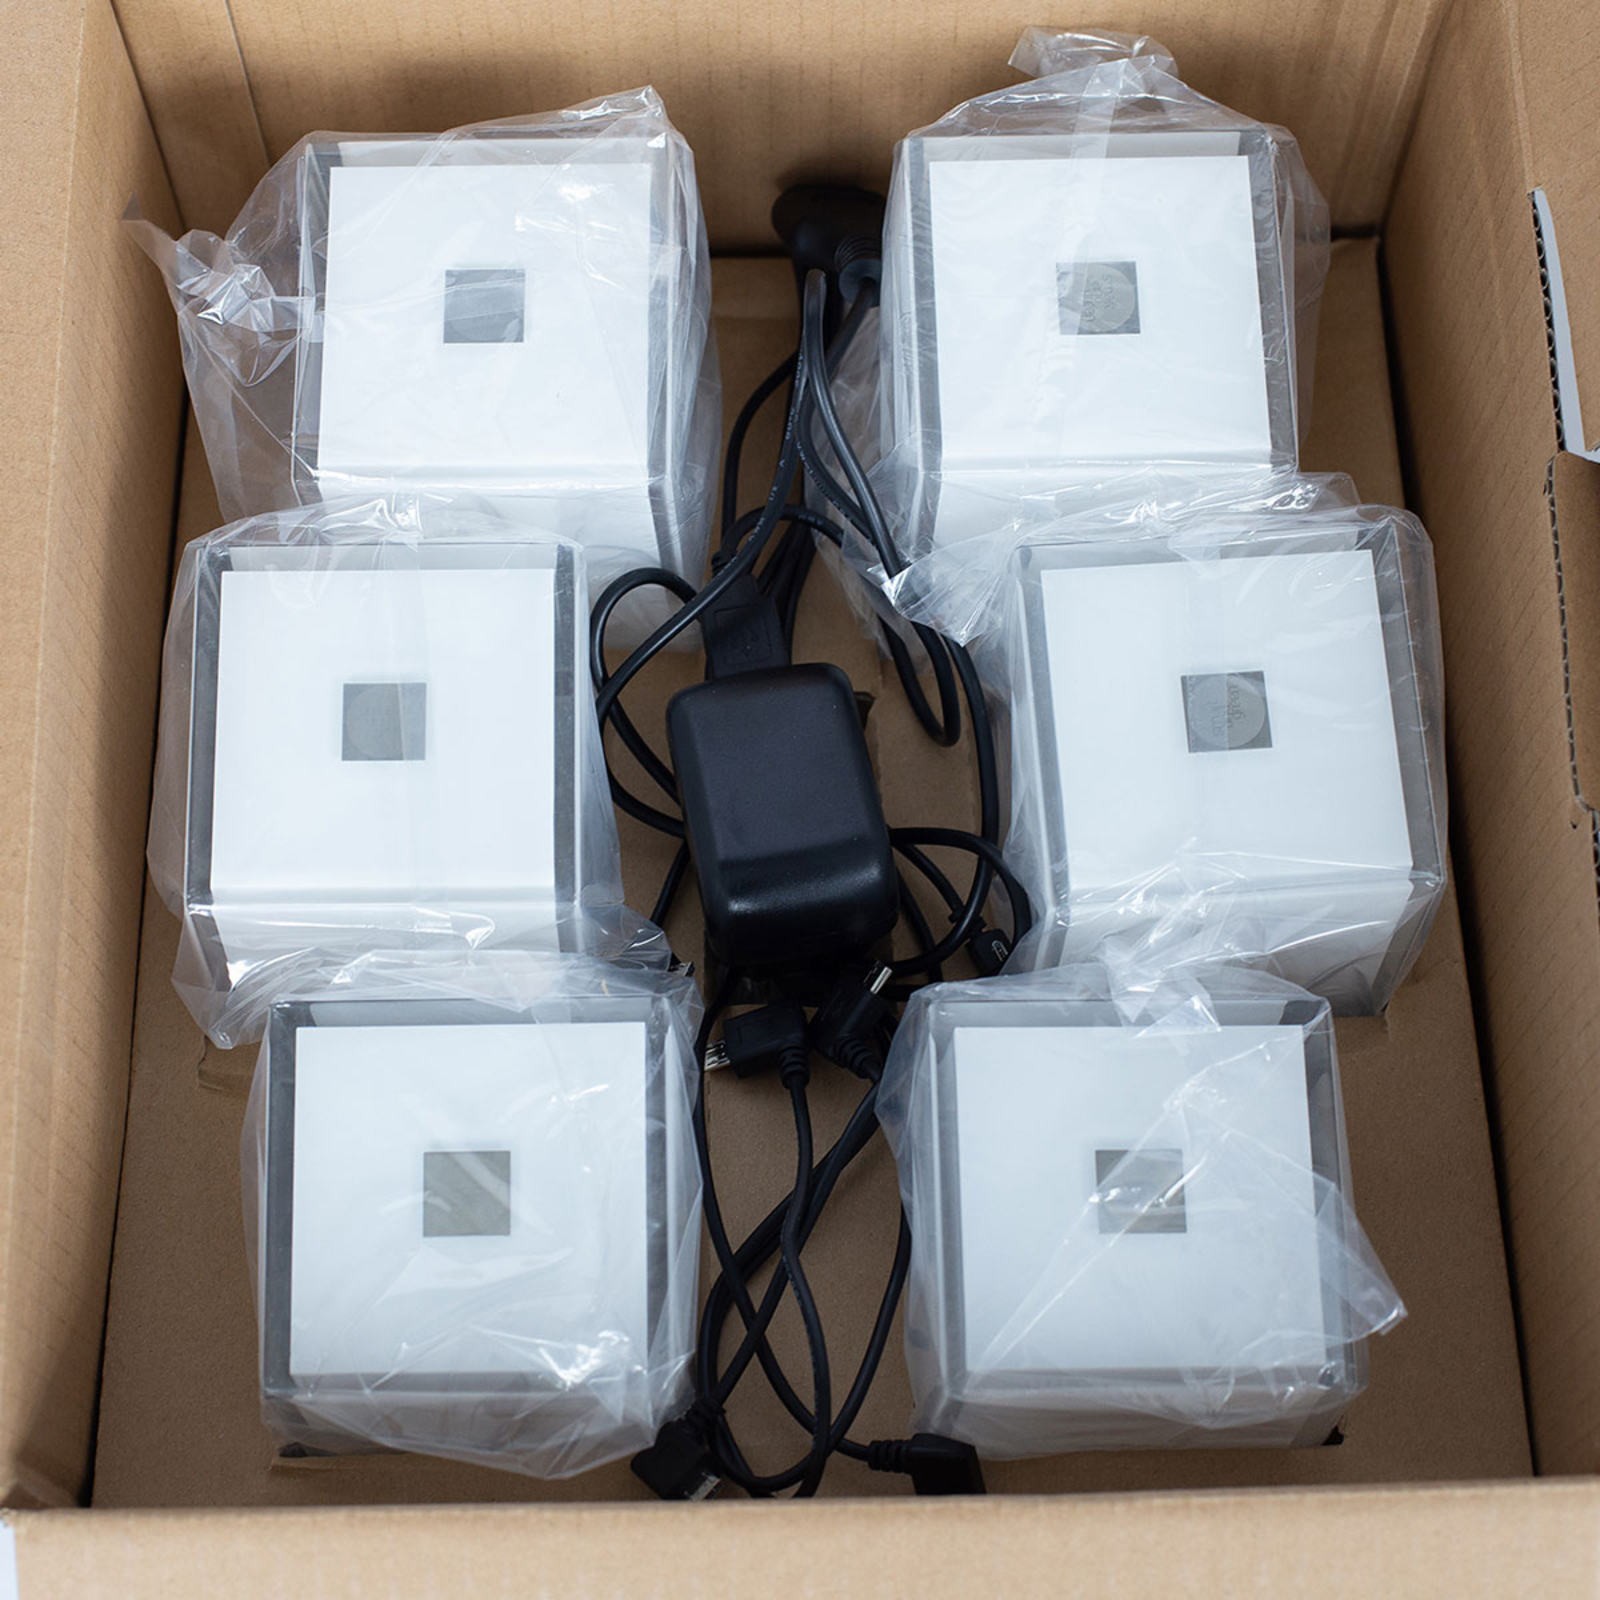 Stolní lampa Cub v balení po 6 kusech, ovládaná aplikací, RGBW